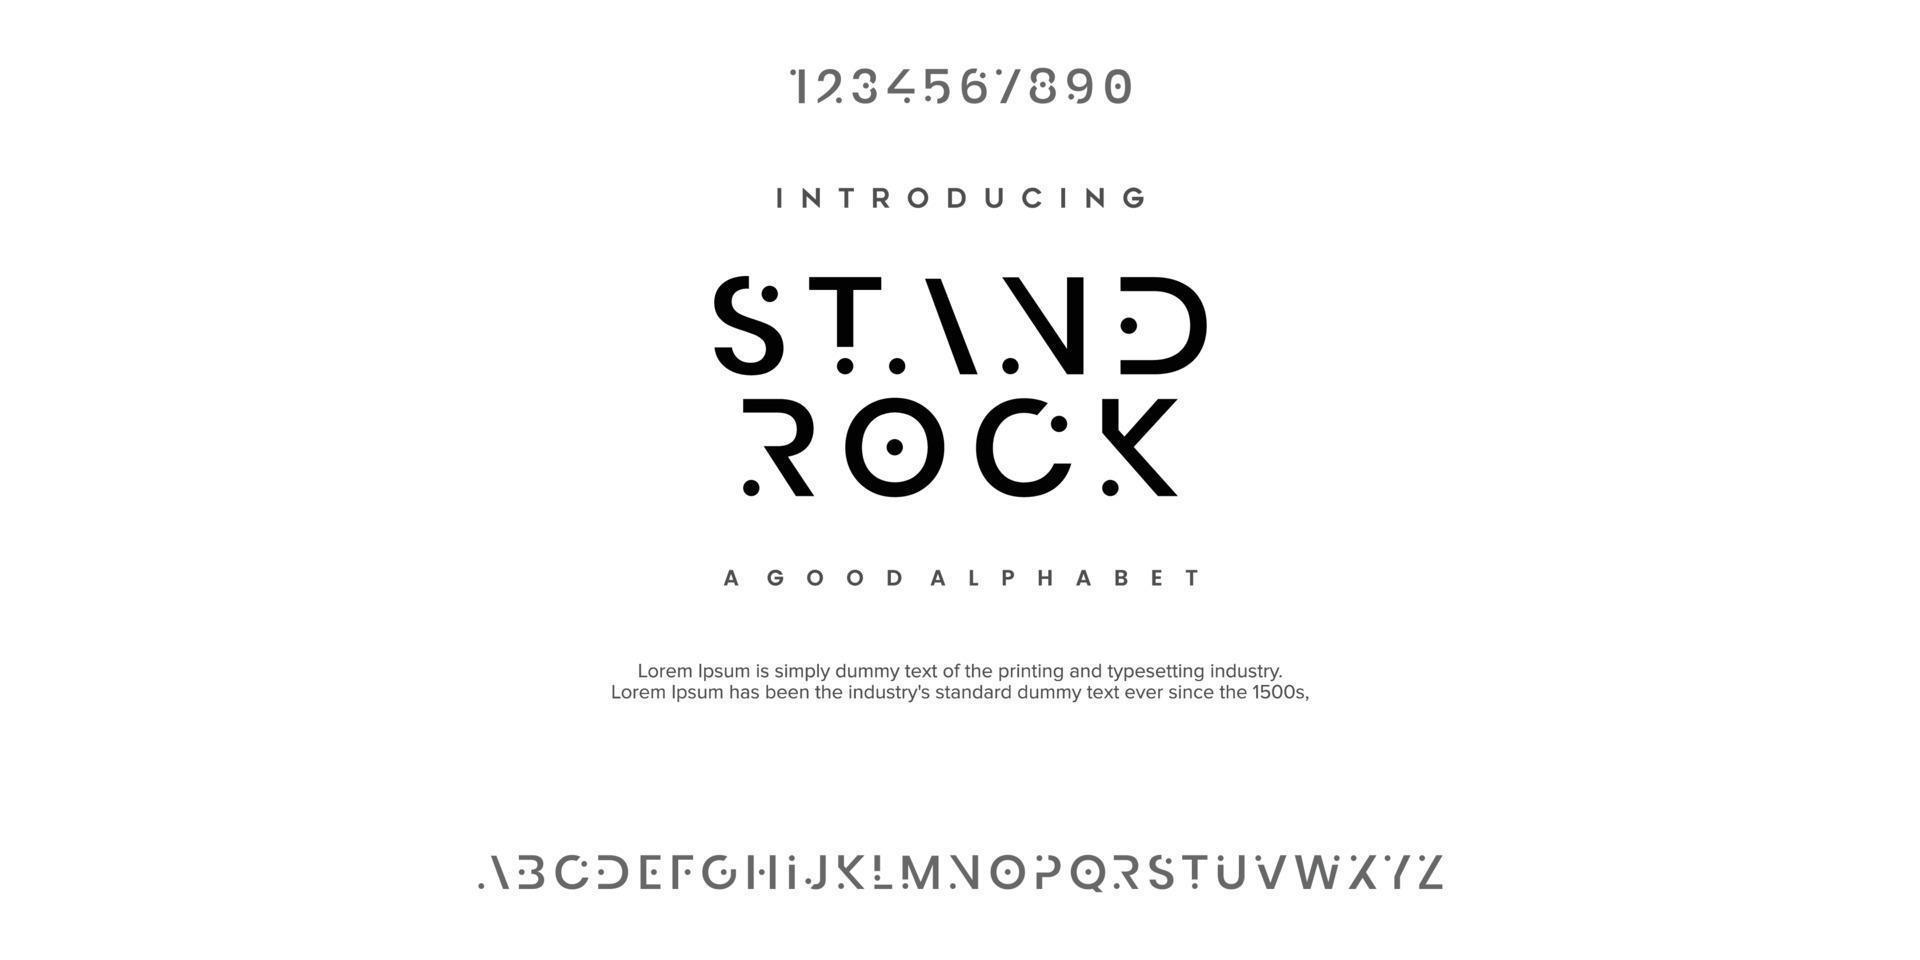 standrock moderne minimale abstracte alfabetlettertypen. typografietechnologie, elektronisch, film, digitaal, muziek, toekomst, logo creatief lettertype. vector illustratie